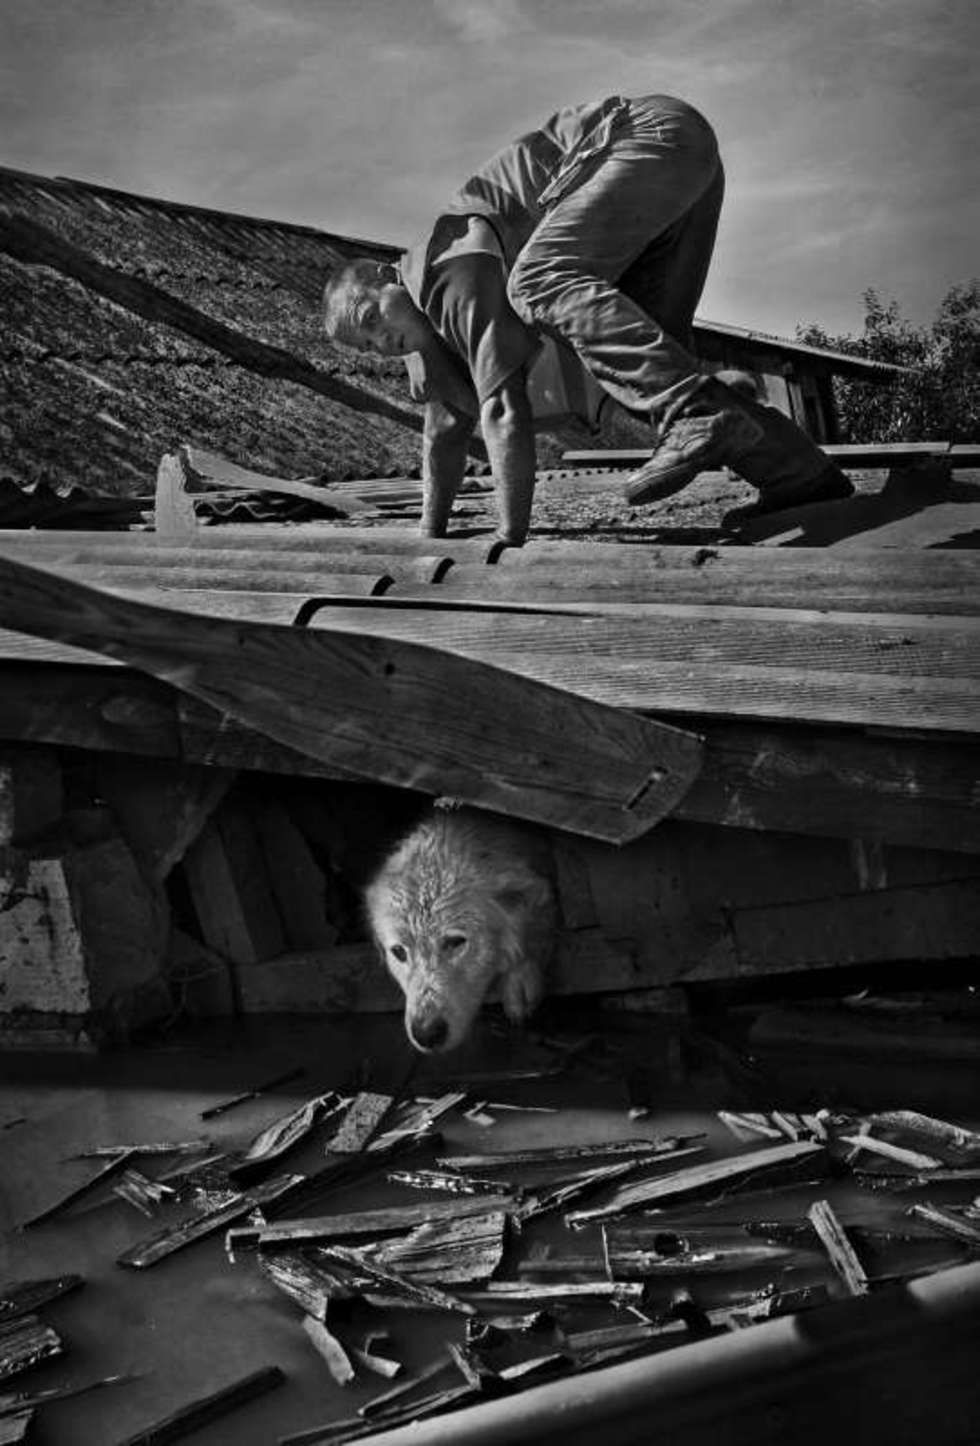  Fotoreportaz Doroty Awiorko-Klimek z Wilkowa zdobyl I nagrode Grand Press Photo w kategorii wydarzenie